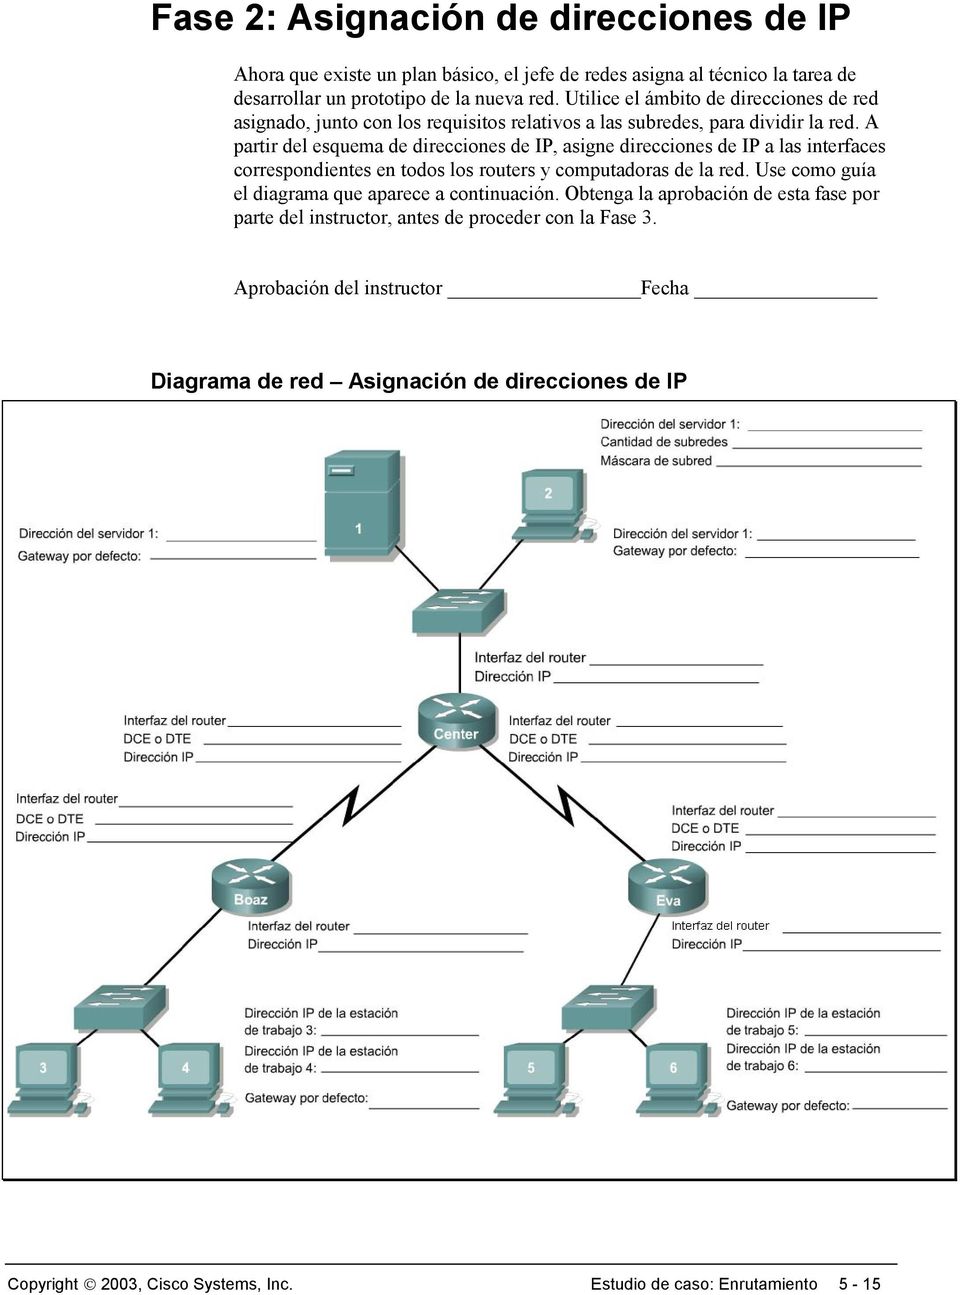 A partir del esquema de direcciones de IP, asigne direcciones de IP a las interfaces correspondientes en todos los routers y computadoras de la red.